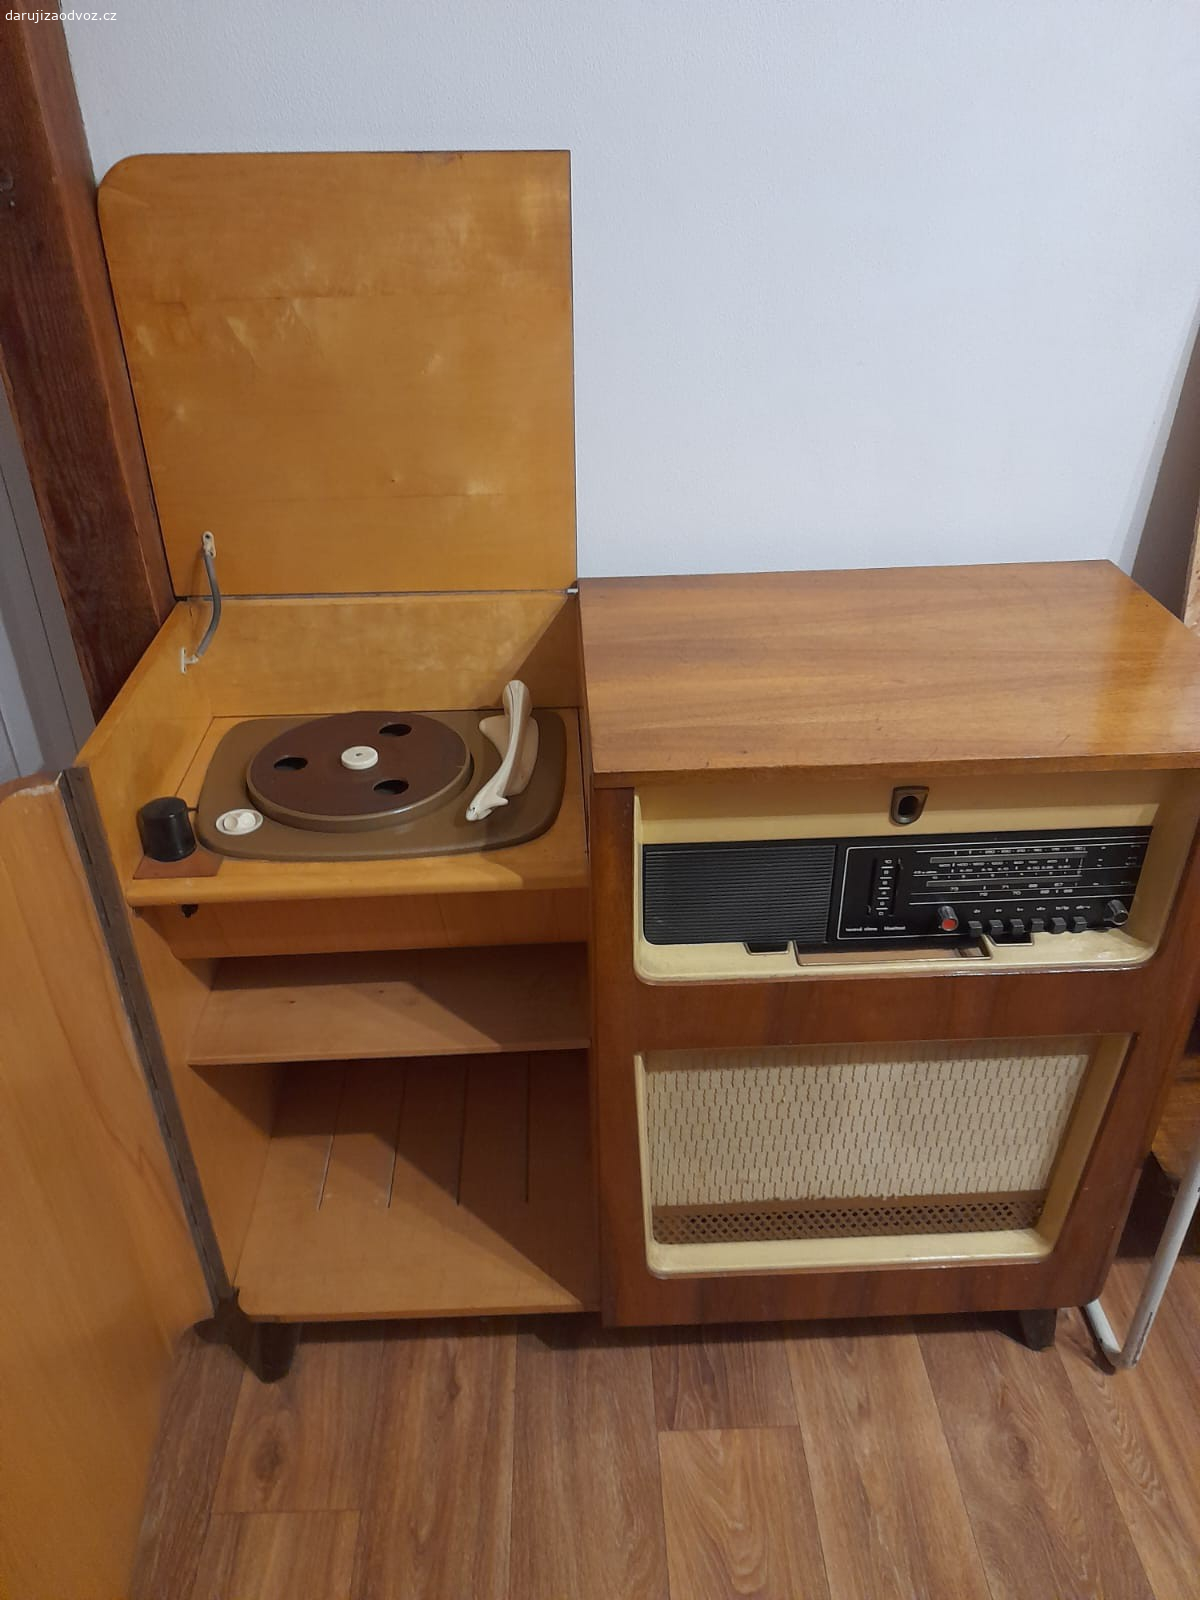 Starý gramofon s rádiem. Skříňka s rádiem a gramofonem, kabely jsou ustřižené, ale zřejmě je možné zprovoznit